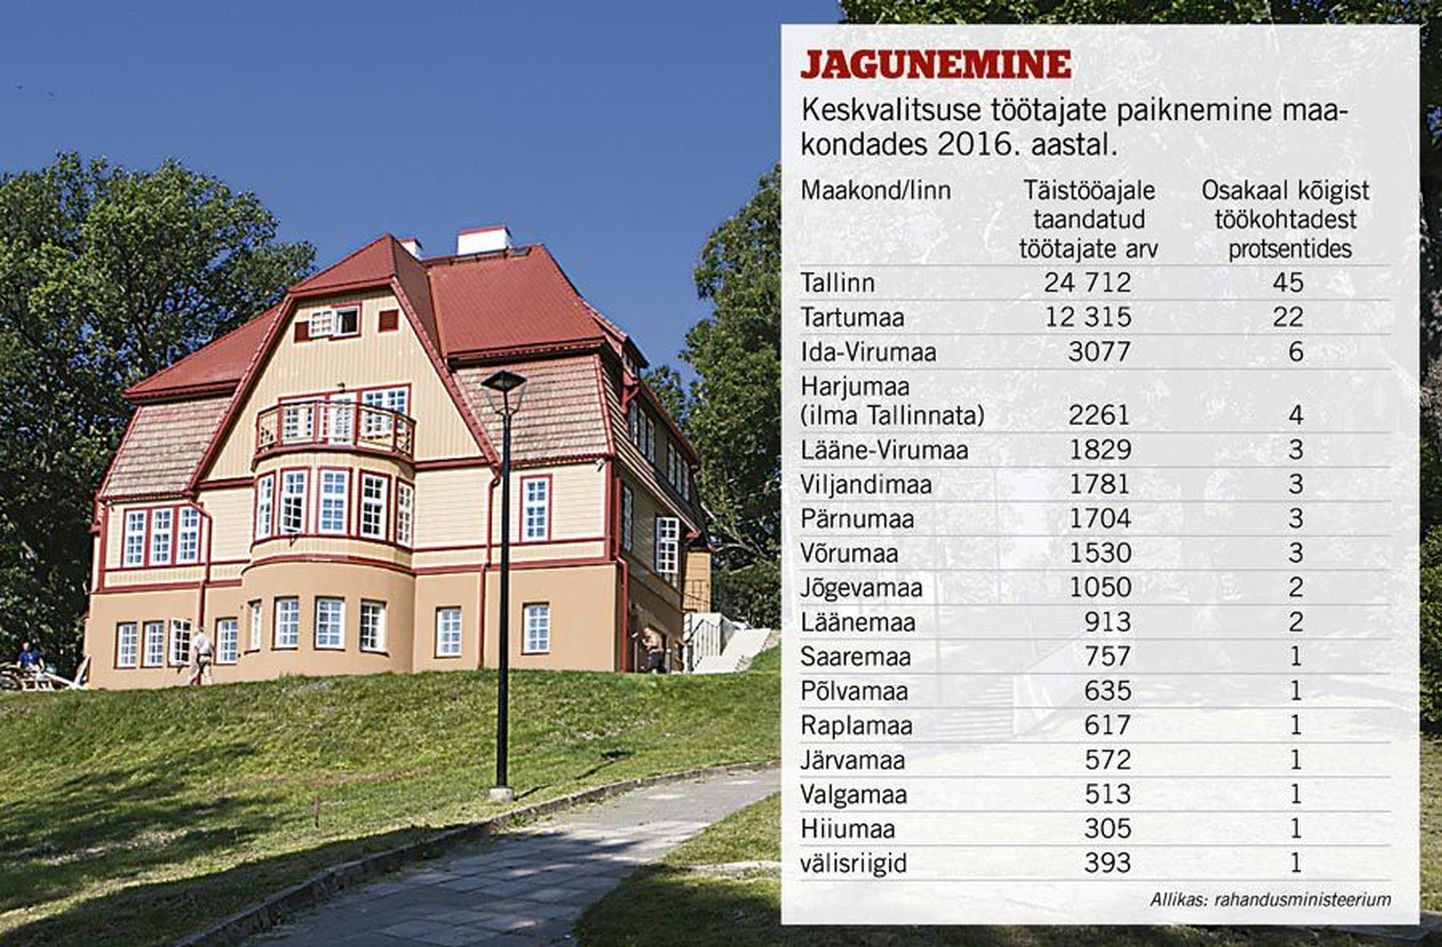 Viljandimaal on rahandusministeeriumi andmetel 1781 keskvalitsuse töökohta. Paar aastat tagasi koliti Viljandisse Trepimäe kõrvale maaelu edendamise sihtasutus. Helir-Valdor Seeder näeb, et keskvalitsuse töökohtade arv võiks kasvada igas maakonnas.